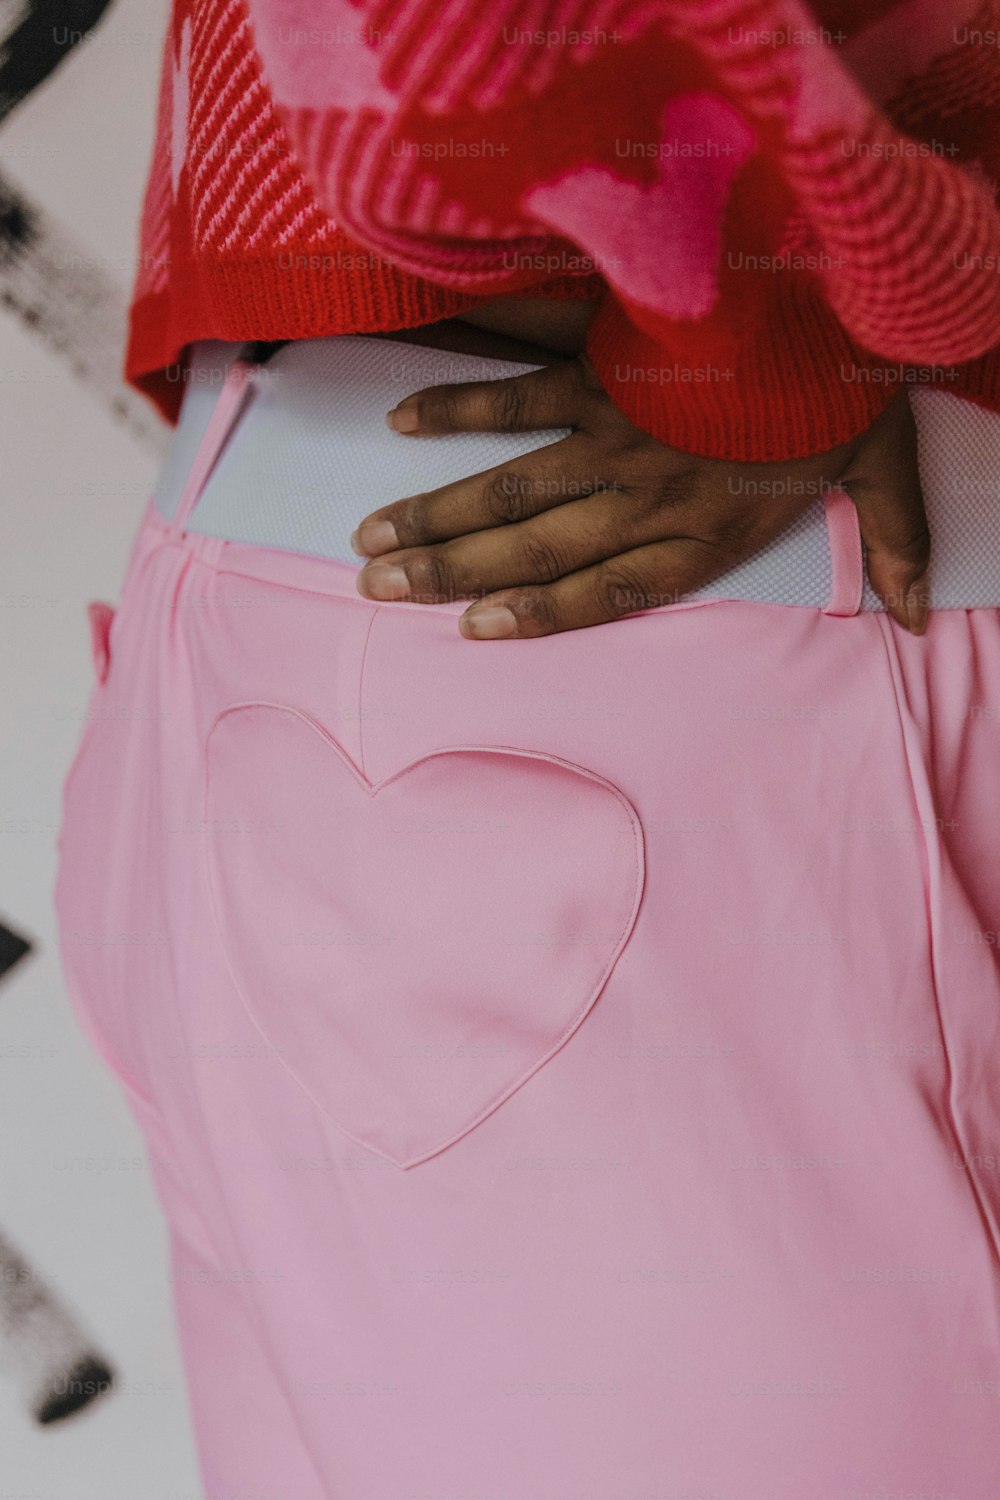 um close up de uma pessoa vestindo uma saia rosa